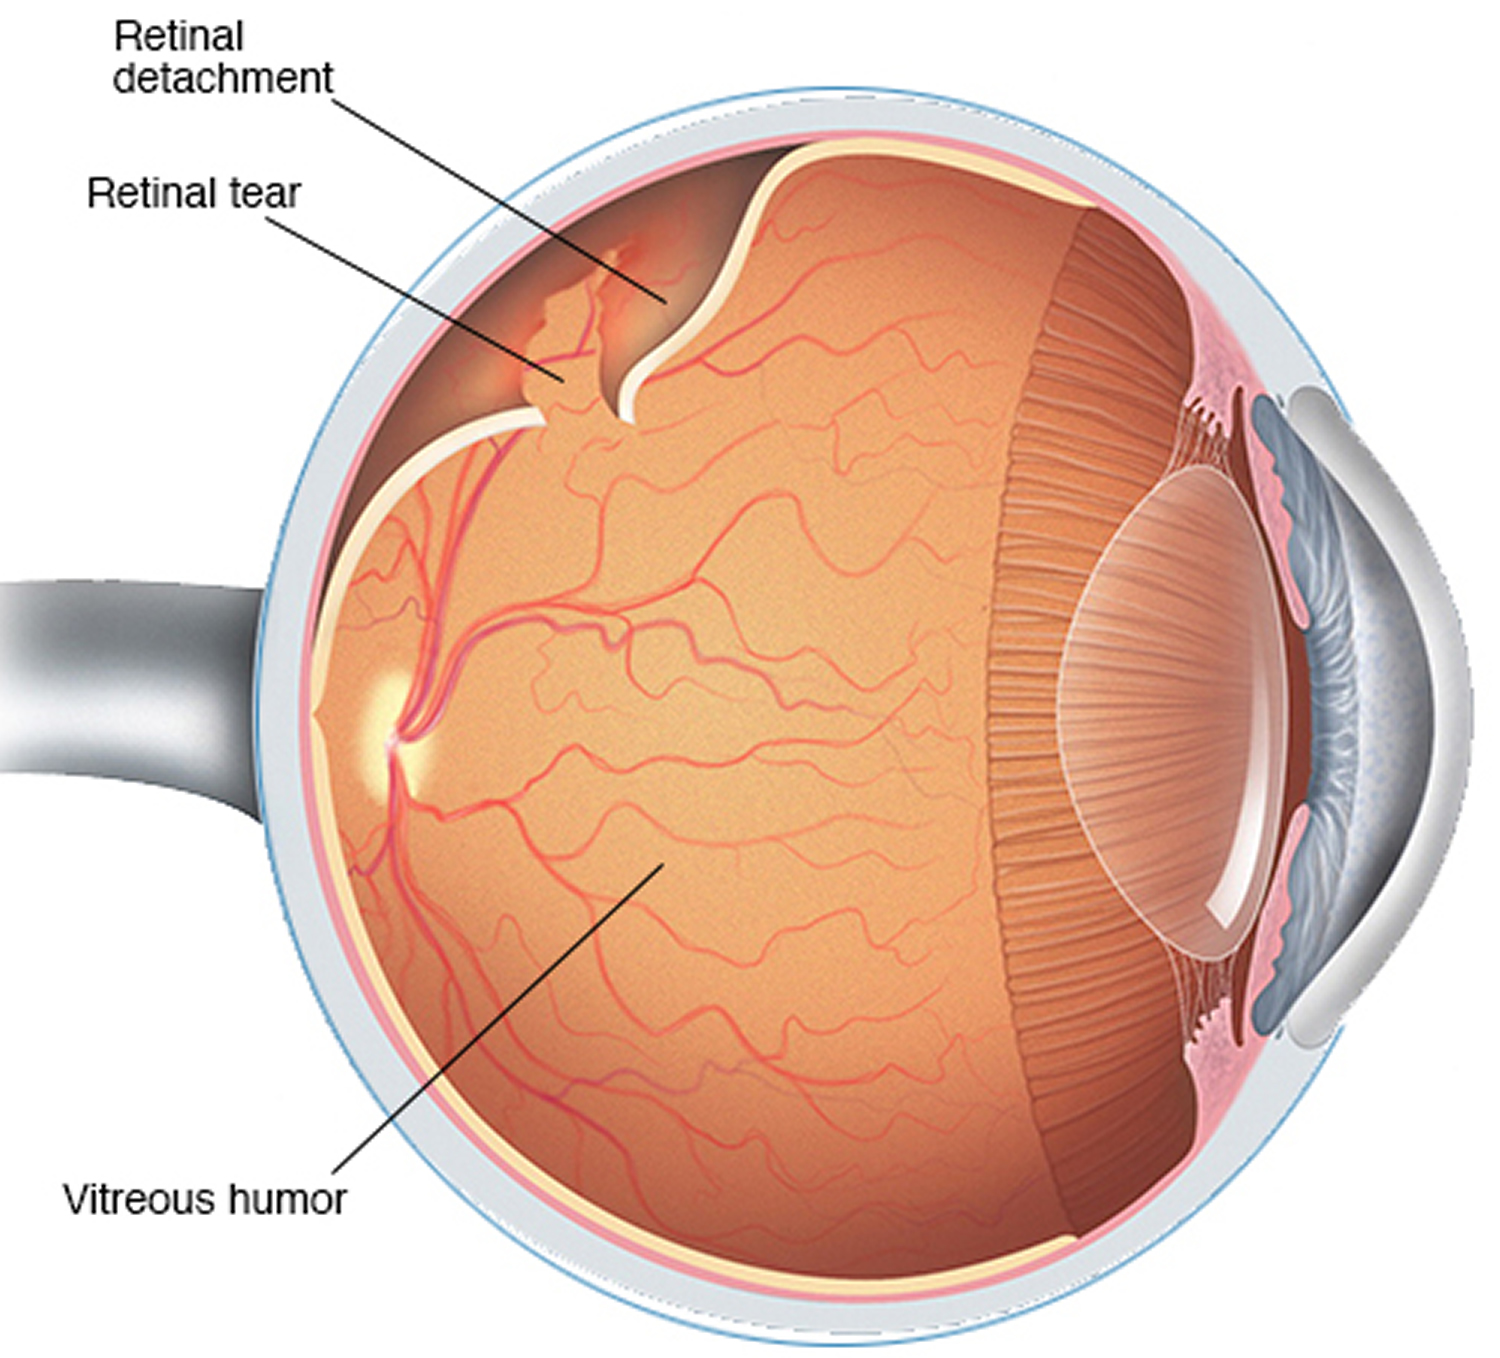 detached retina symptoms blood